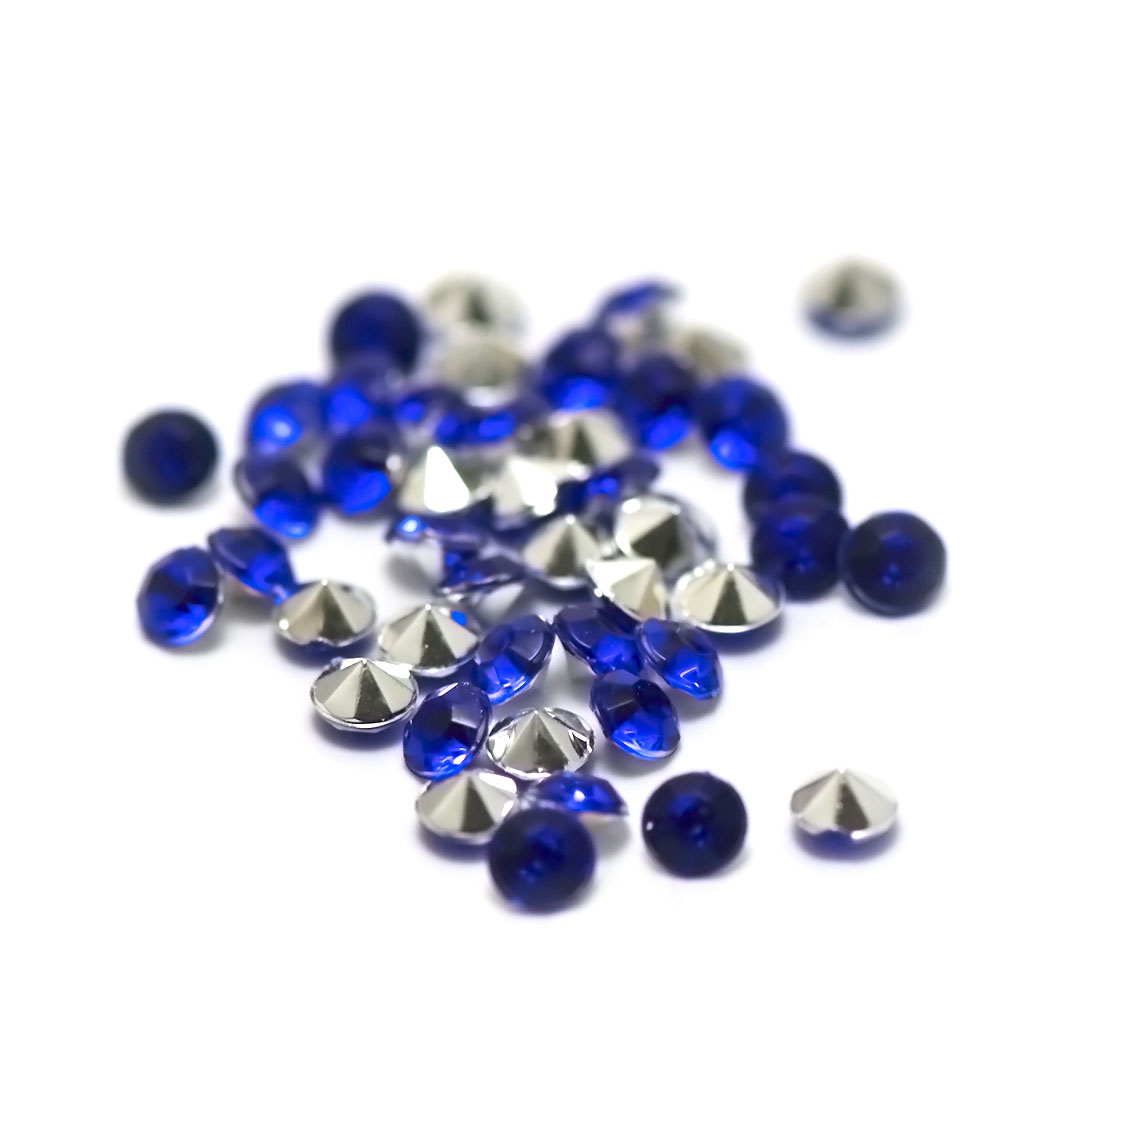 5g de perles strass en verre à coller cône 4 mm,bleu sapphir